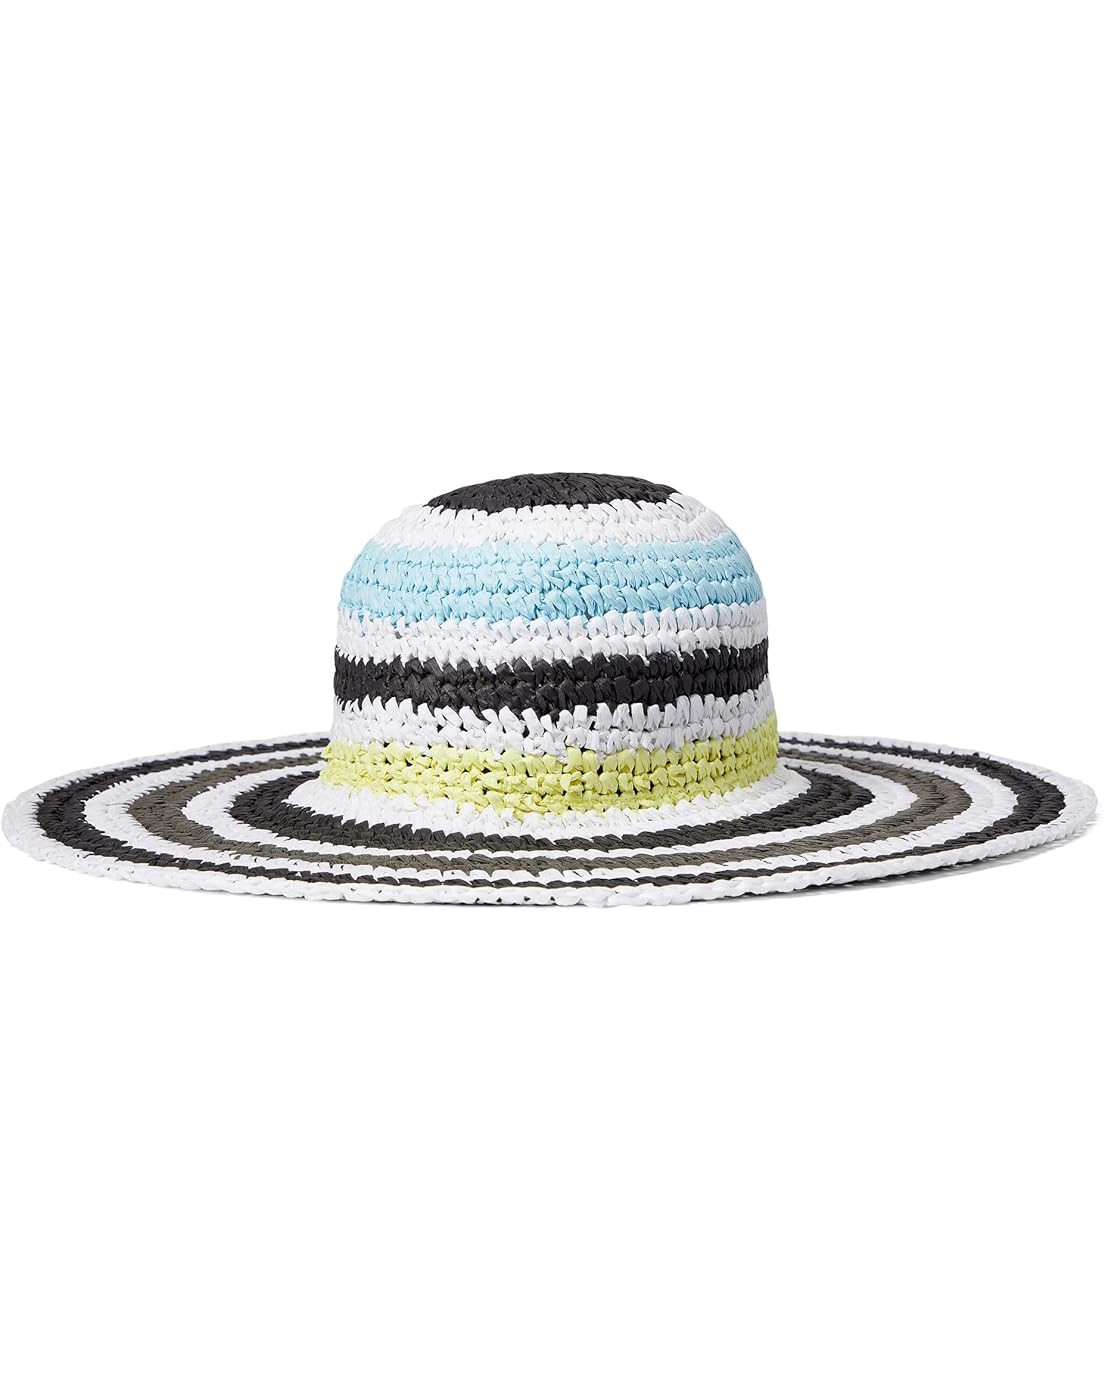  Badgley Mischka Striped Crochet Floppy Hat